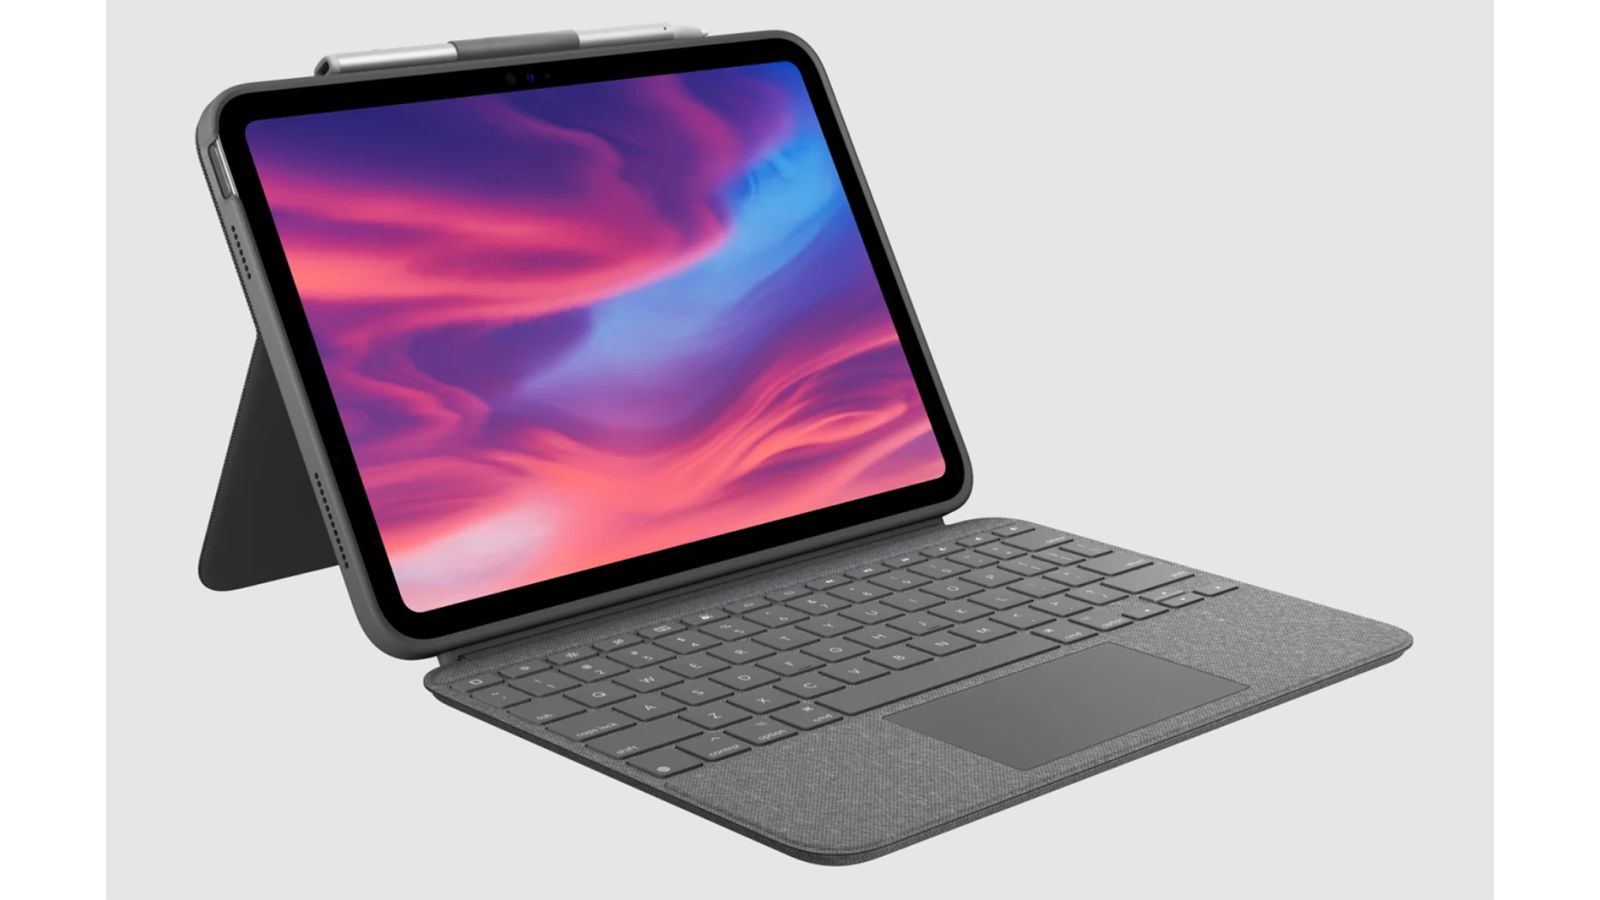 Hình nền iPad 10 2022: Chào đón năm 2022 cùng hình nền độc đáo giới thiệu về chiếc iPad 10 mới nhất. Được thiết kế đơn giản, tinh tế và hiện đại, hình nền này sẽ khiến người dùng tò mò và muốn khám phá thêm về sản phẩm trên.